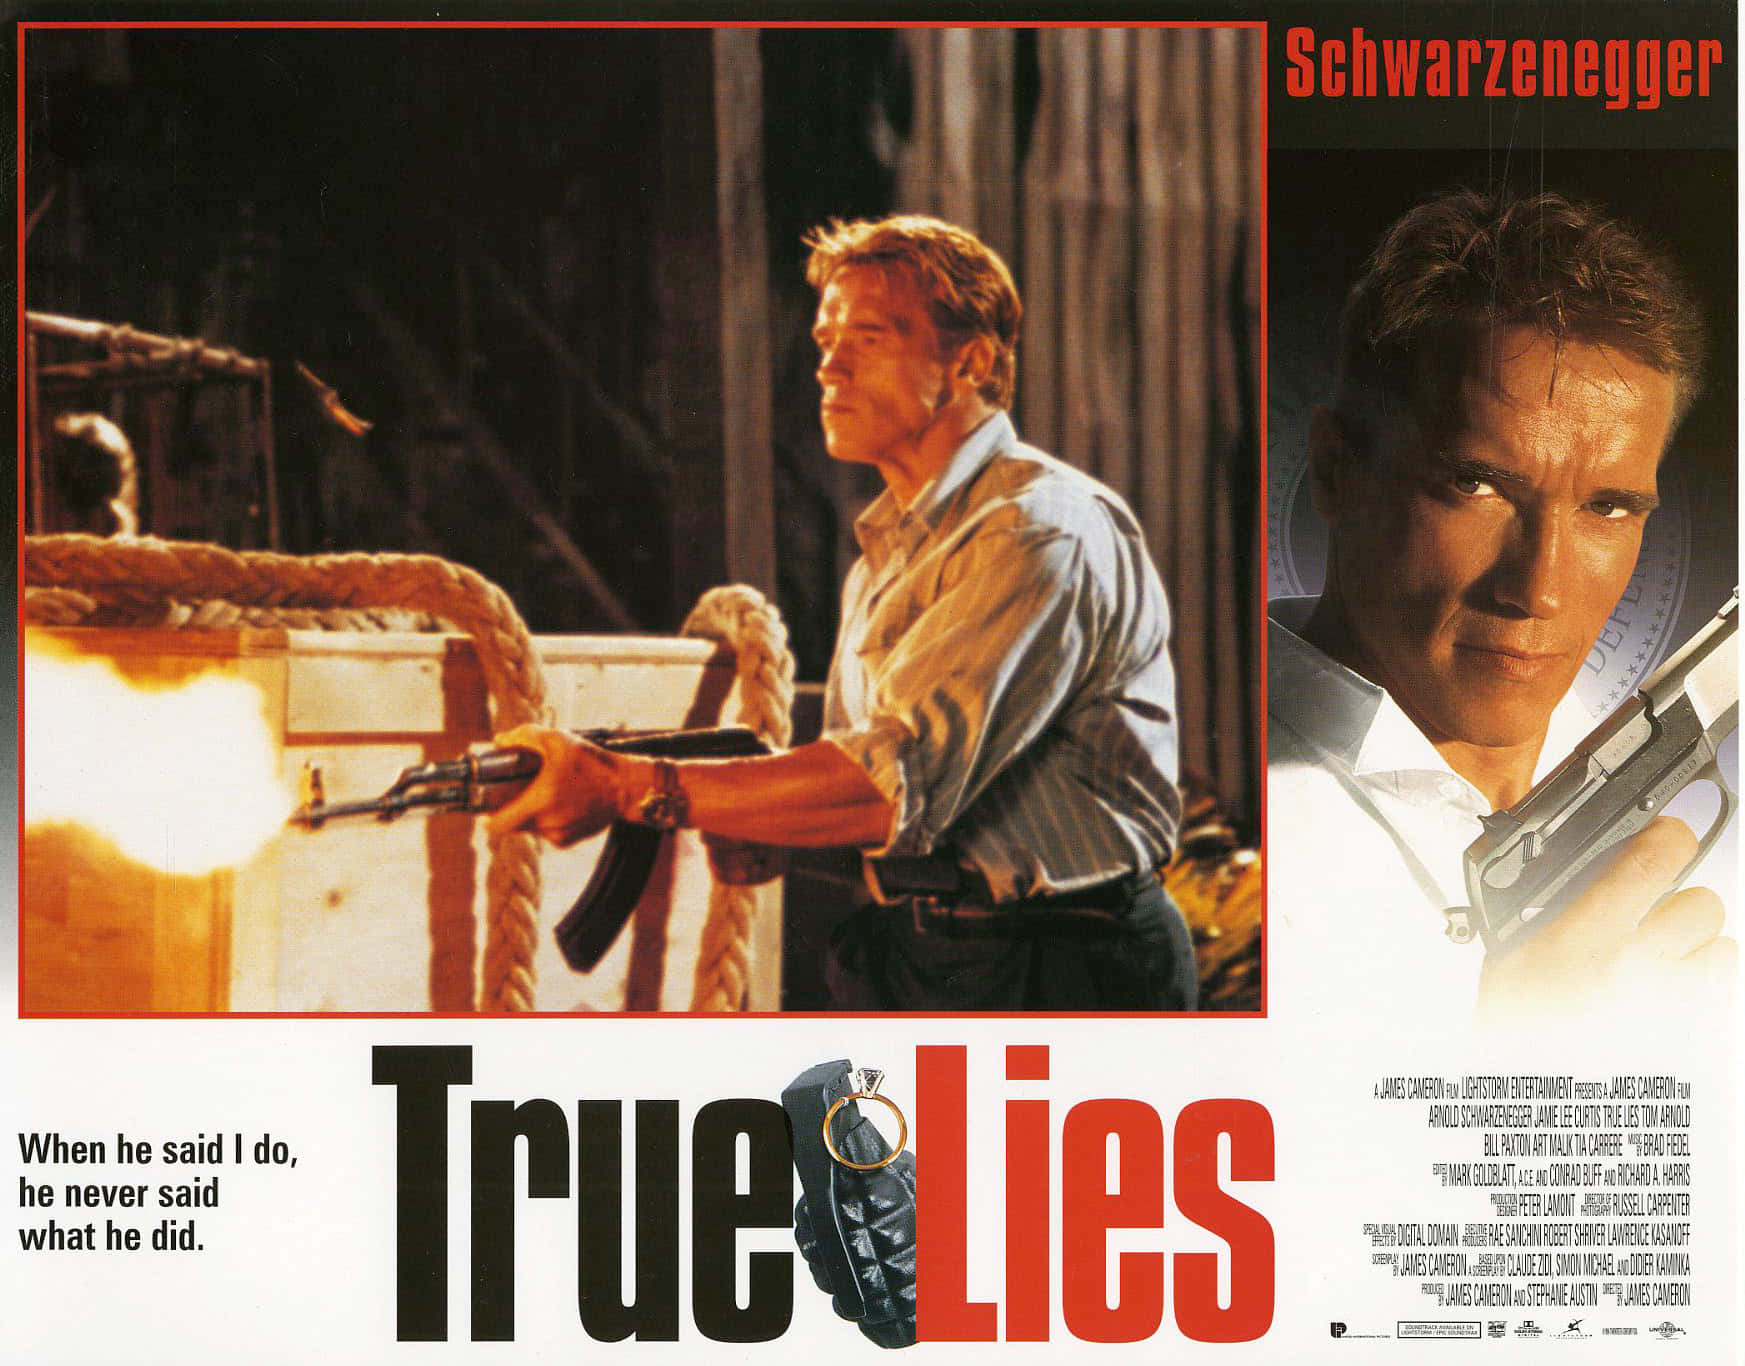 true lies movie poster